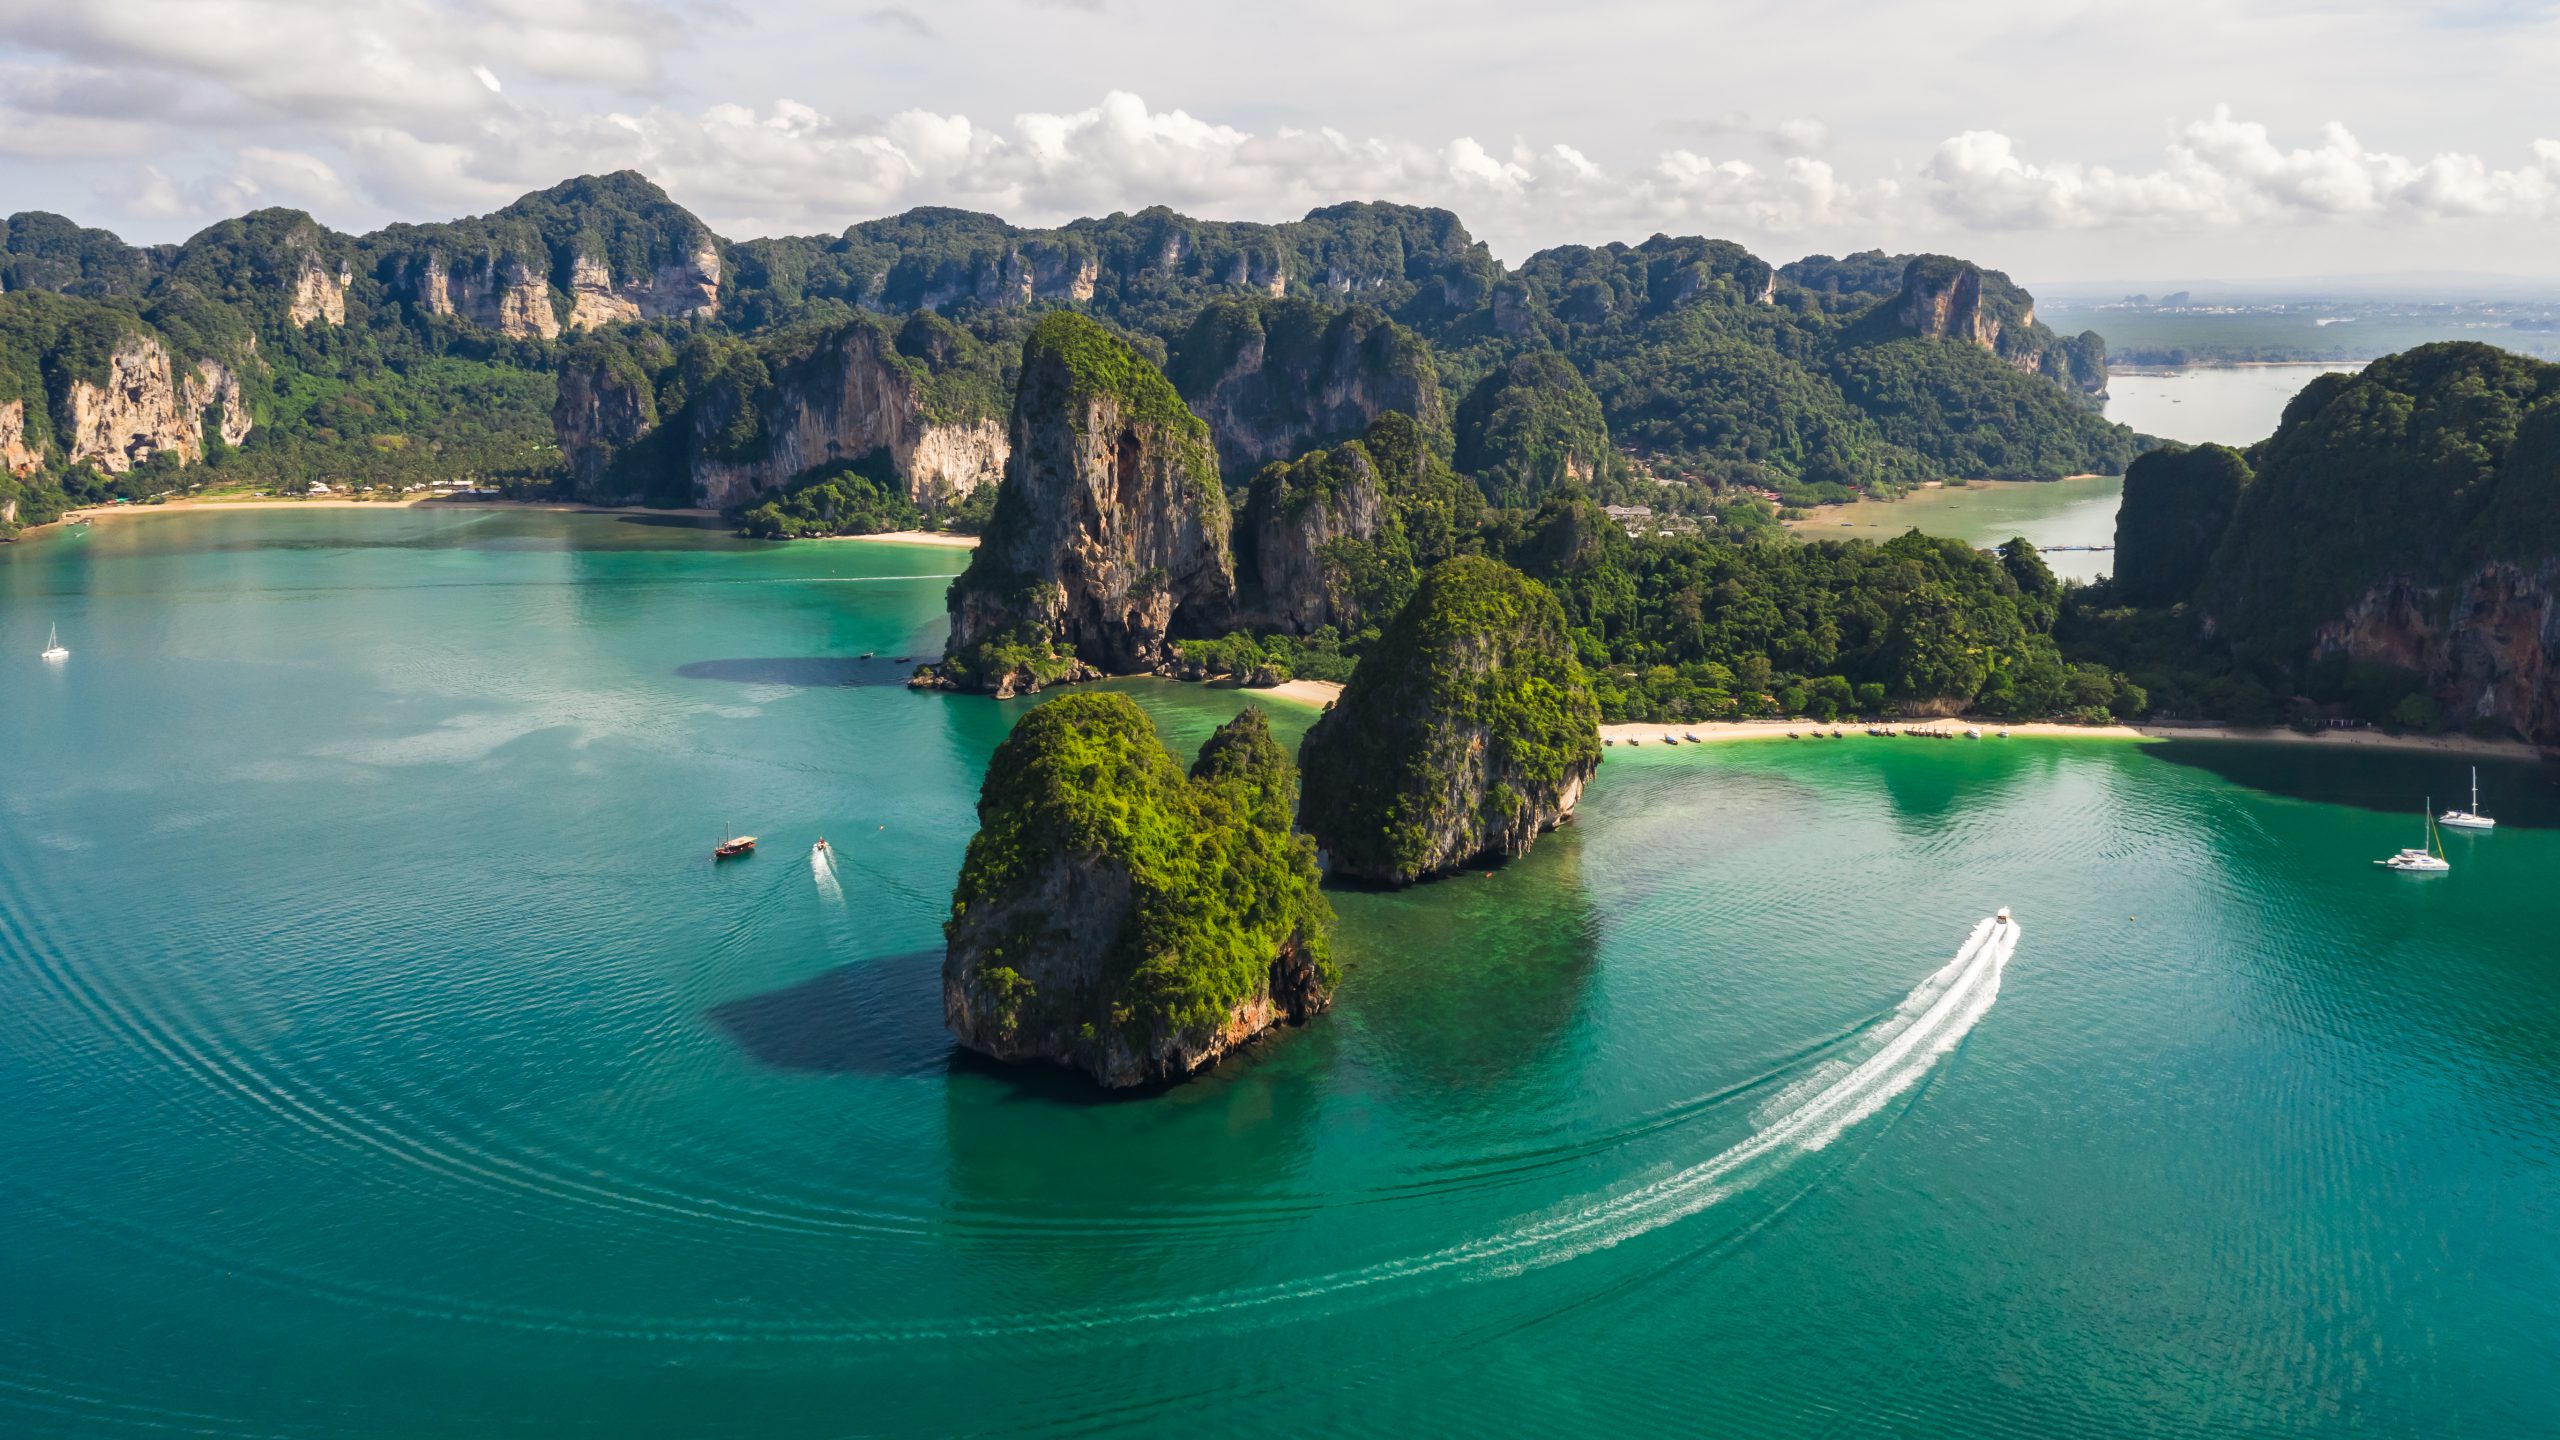 פוקט, בנגקוק וקוסמוי: באילו איים חייב לבקר בטיול בתאילנד בסיום לימודי המשפטים?